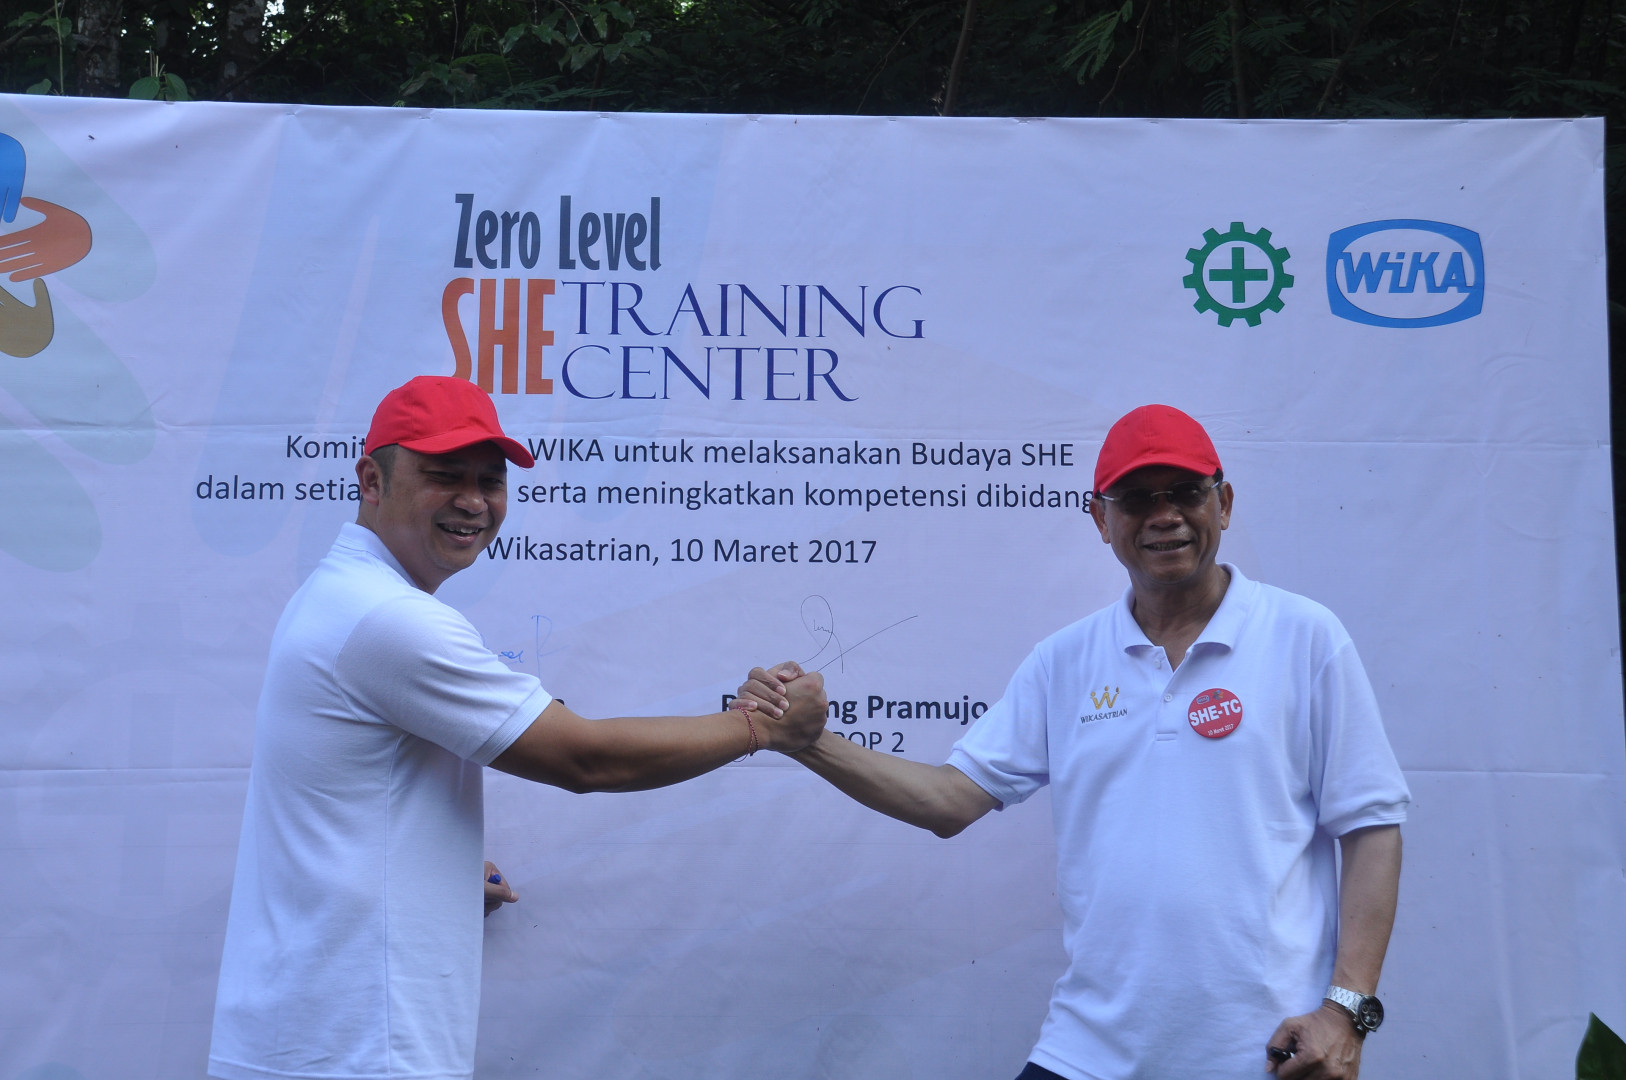 WIKA Plans to Build Zero Level SHE Training Center Image